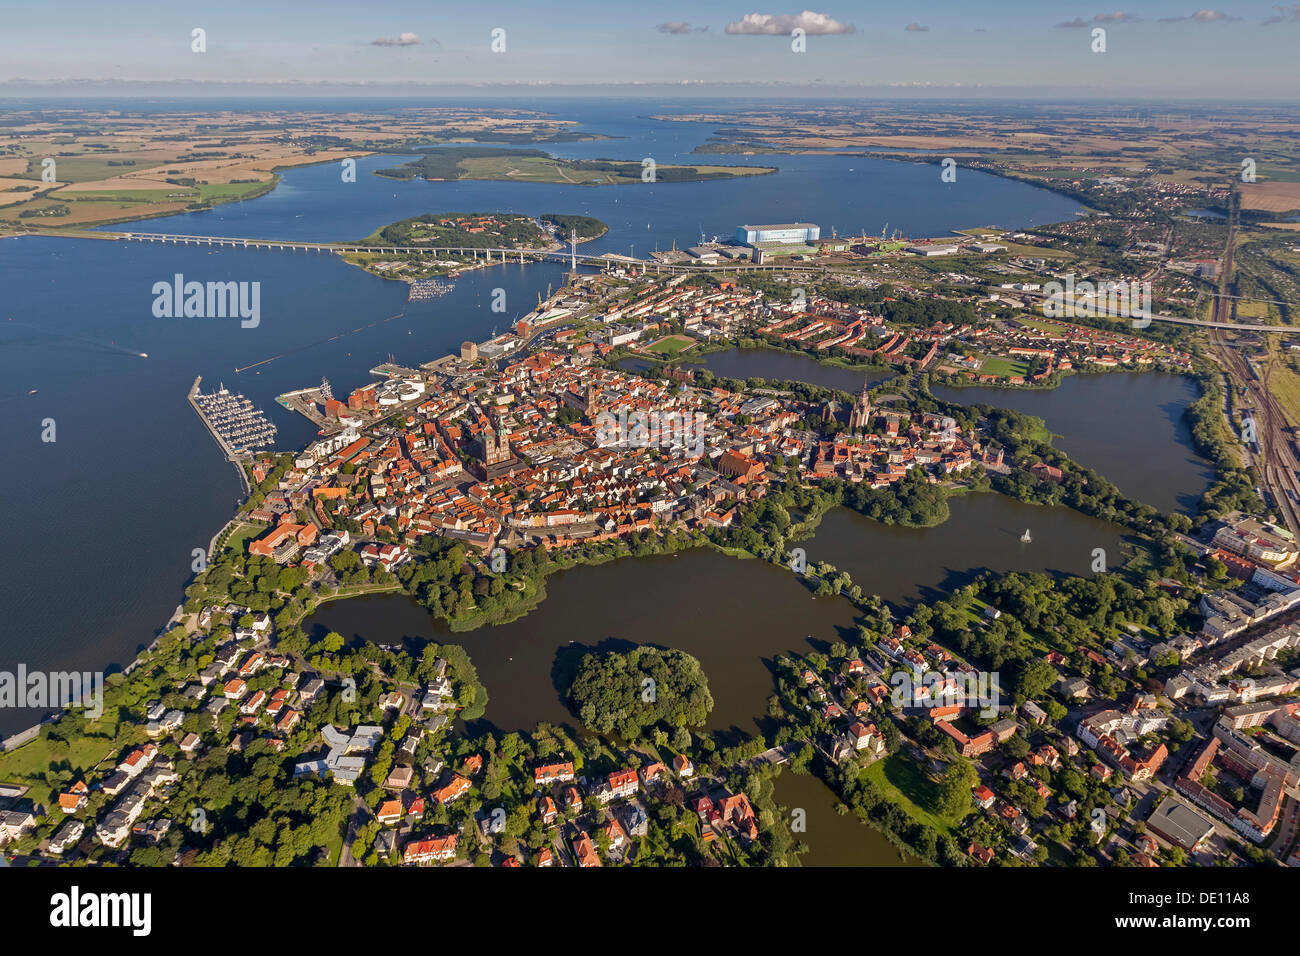 Vue aérienne, Stralsund, avec la vieille ville entourée d'eau de l'île au son de la mer Baltique, Strelasund Banque D'Images